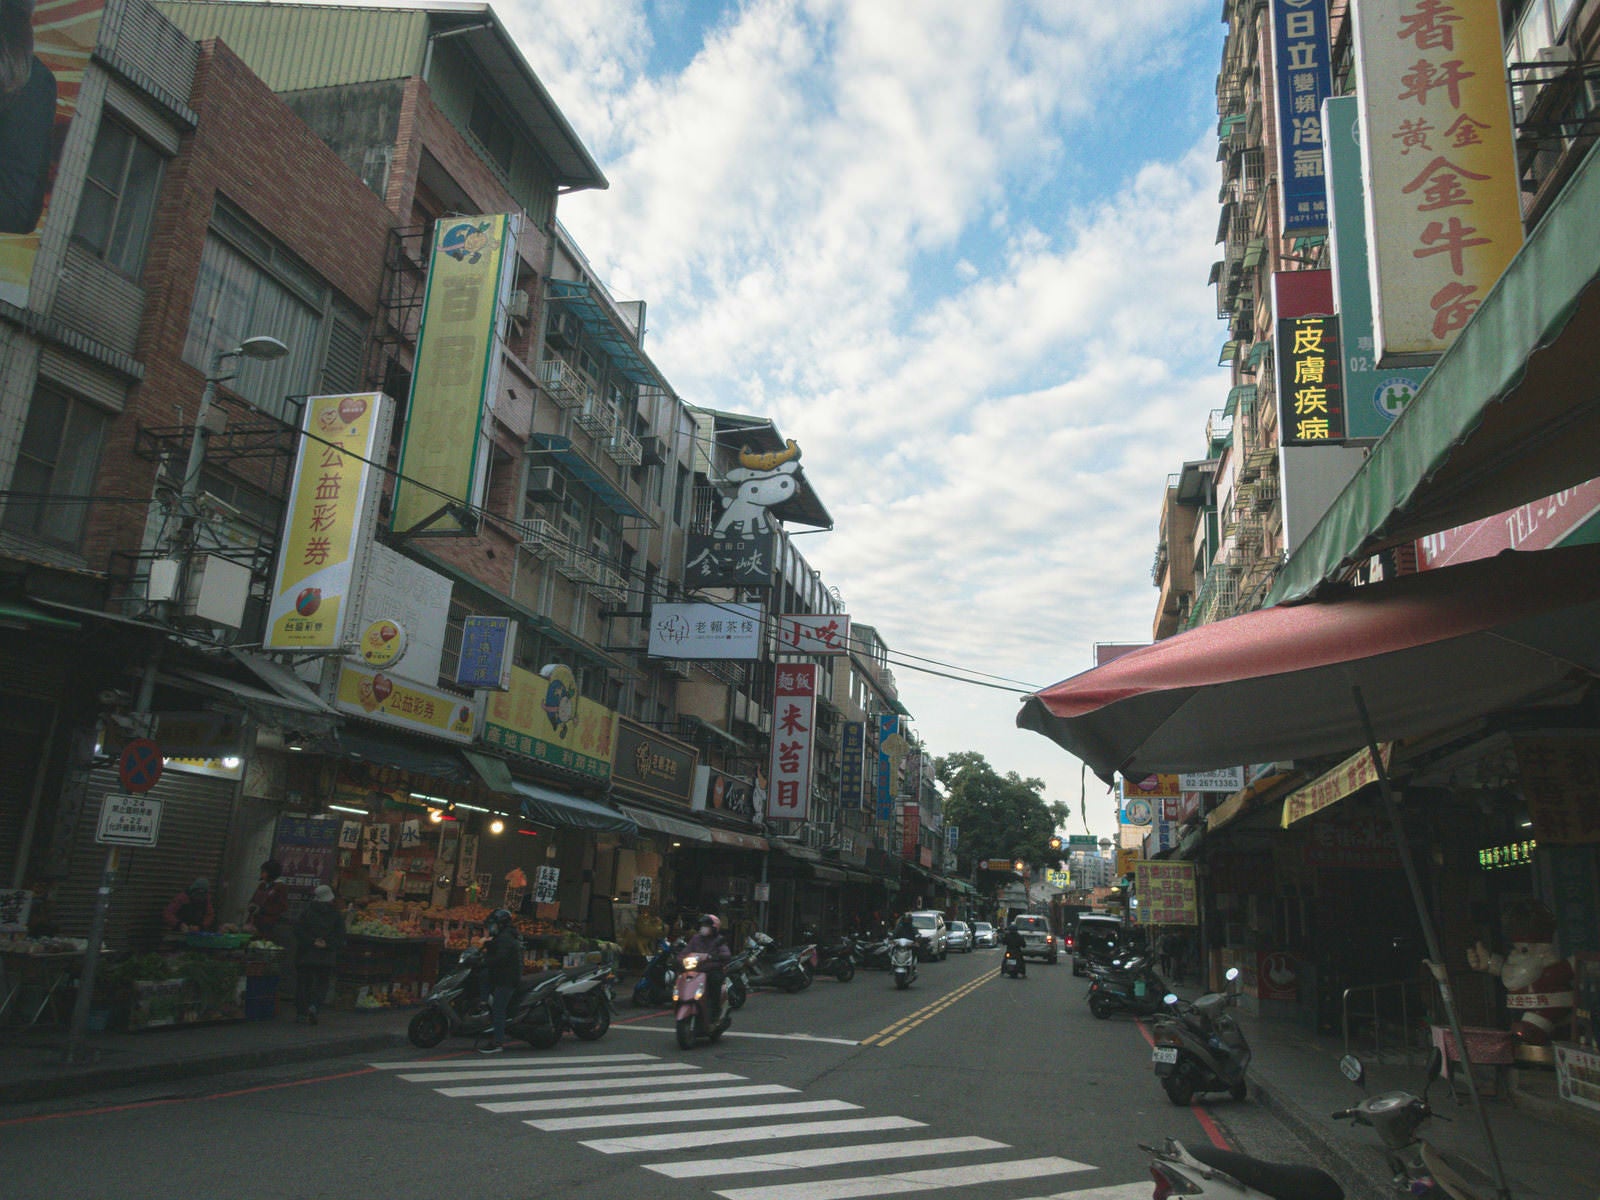 「鶯歌駅近くの繁華街と台湾ぽい看板のある街並み」の写真